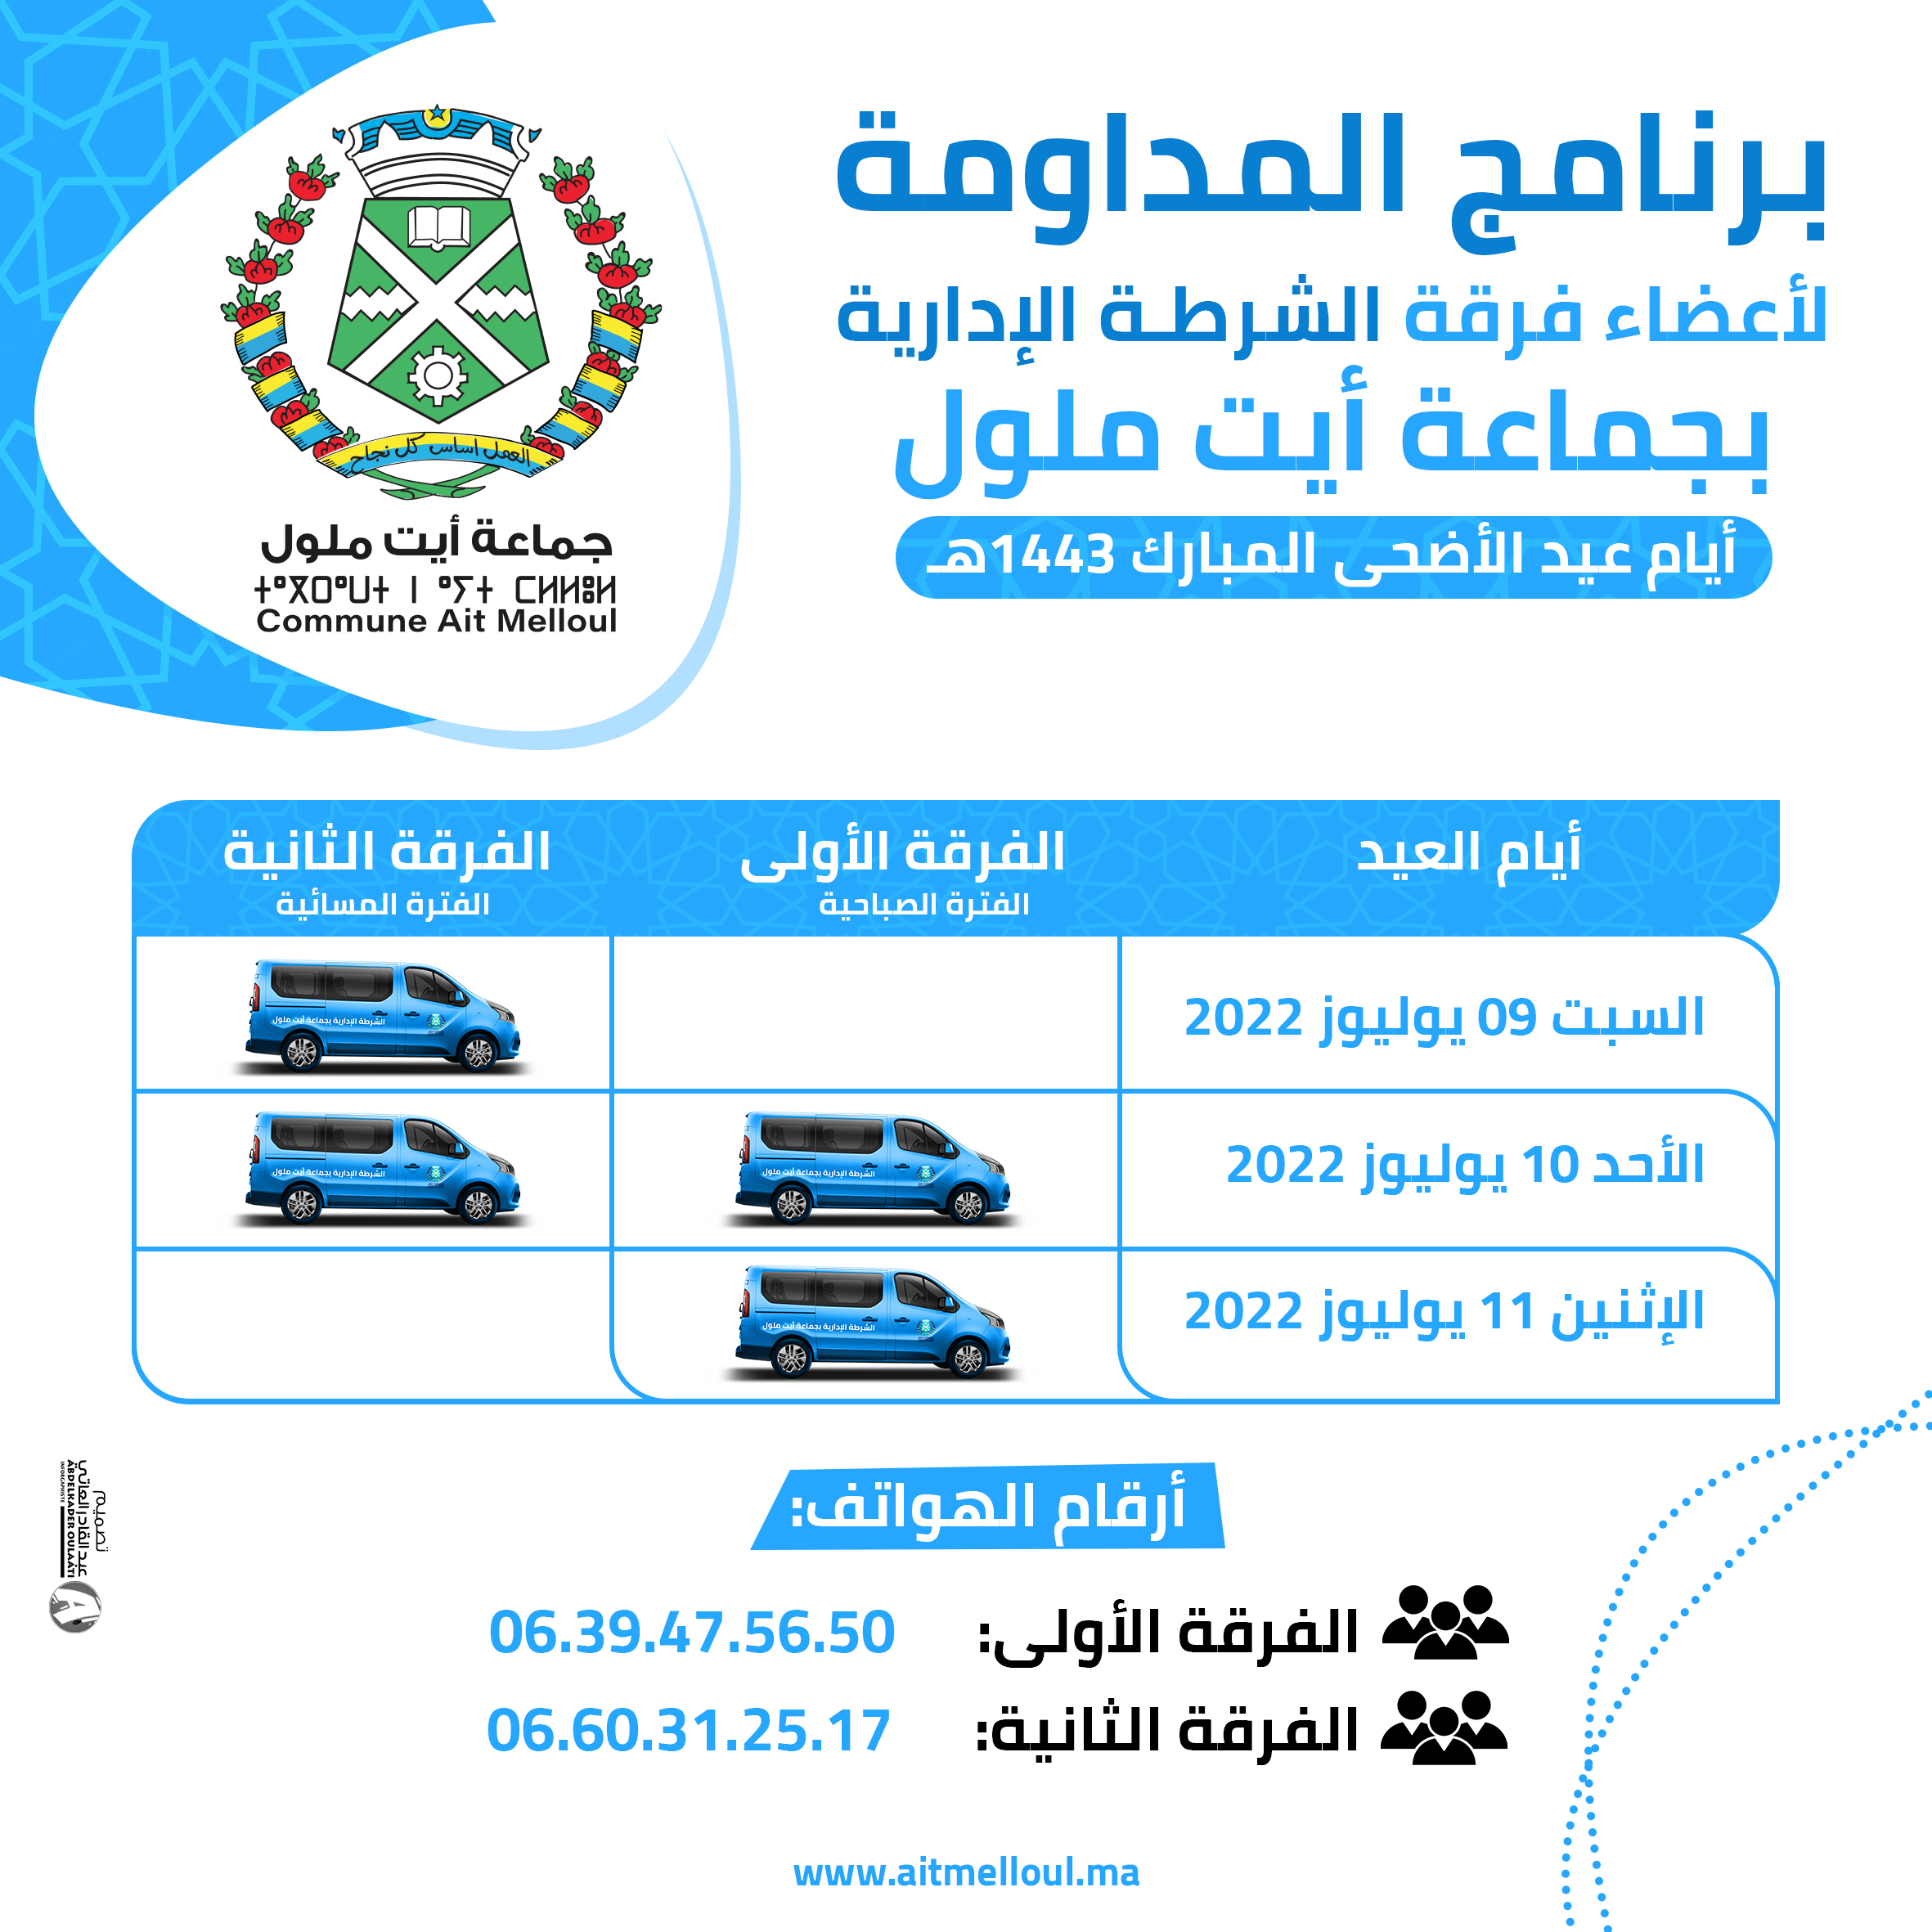 برنامج المداومة لأعضاء فرقة الشرطة الإدارية مع أرقام الهواتف خلال أيام عيد الأضحى المبارك.